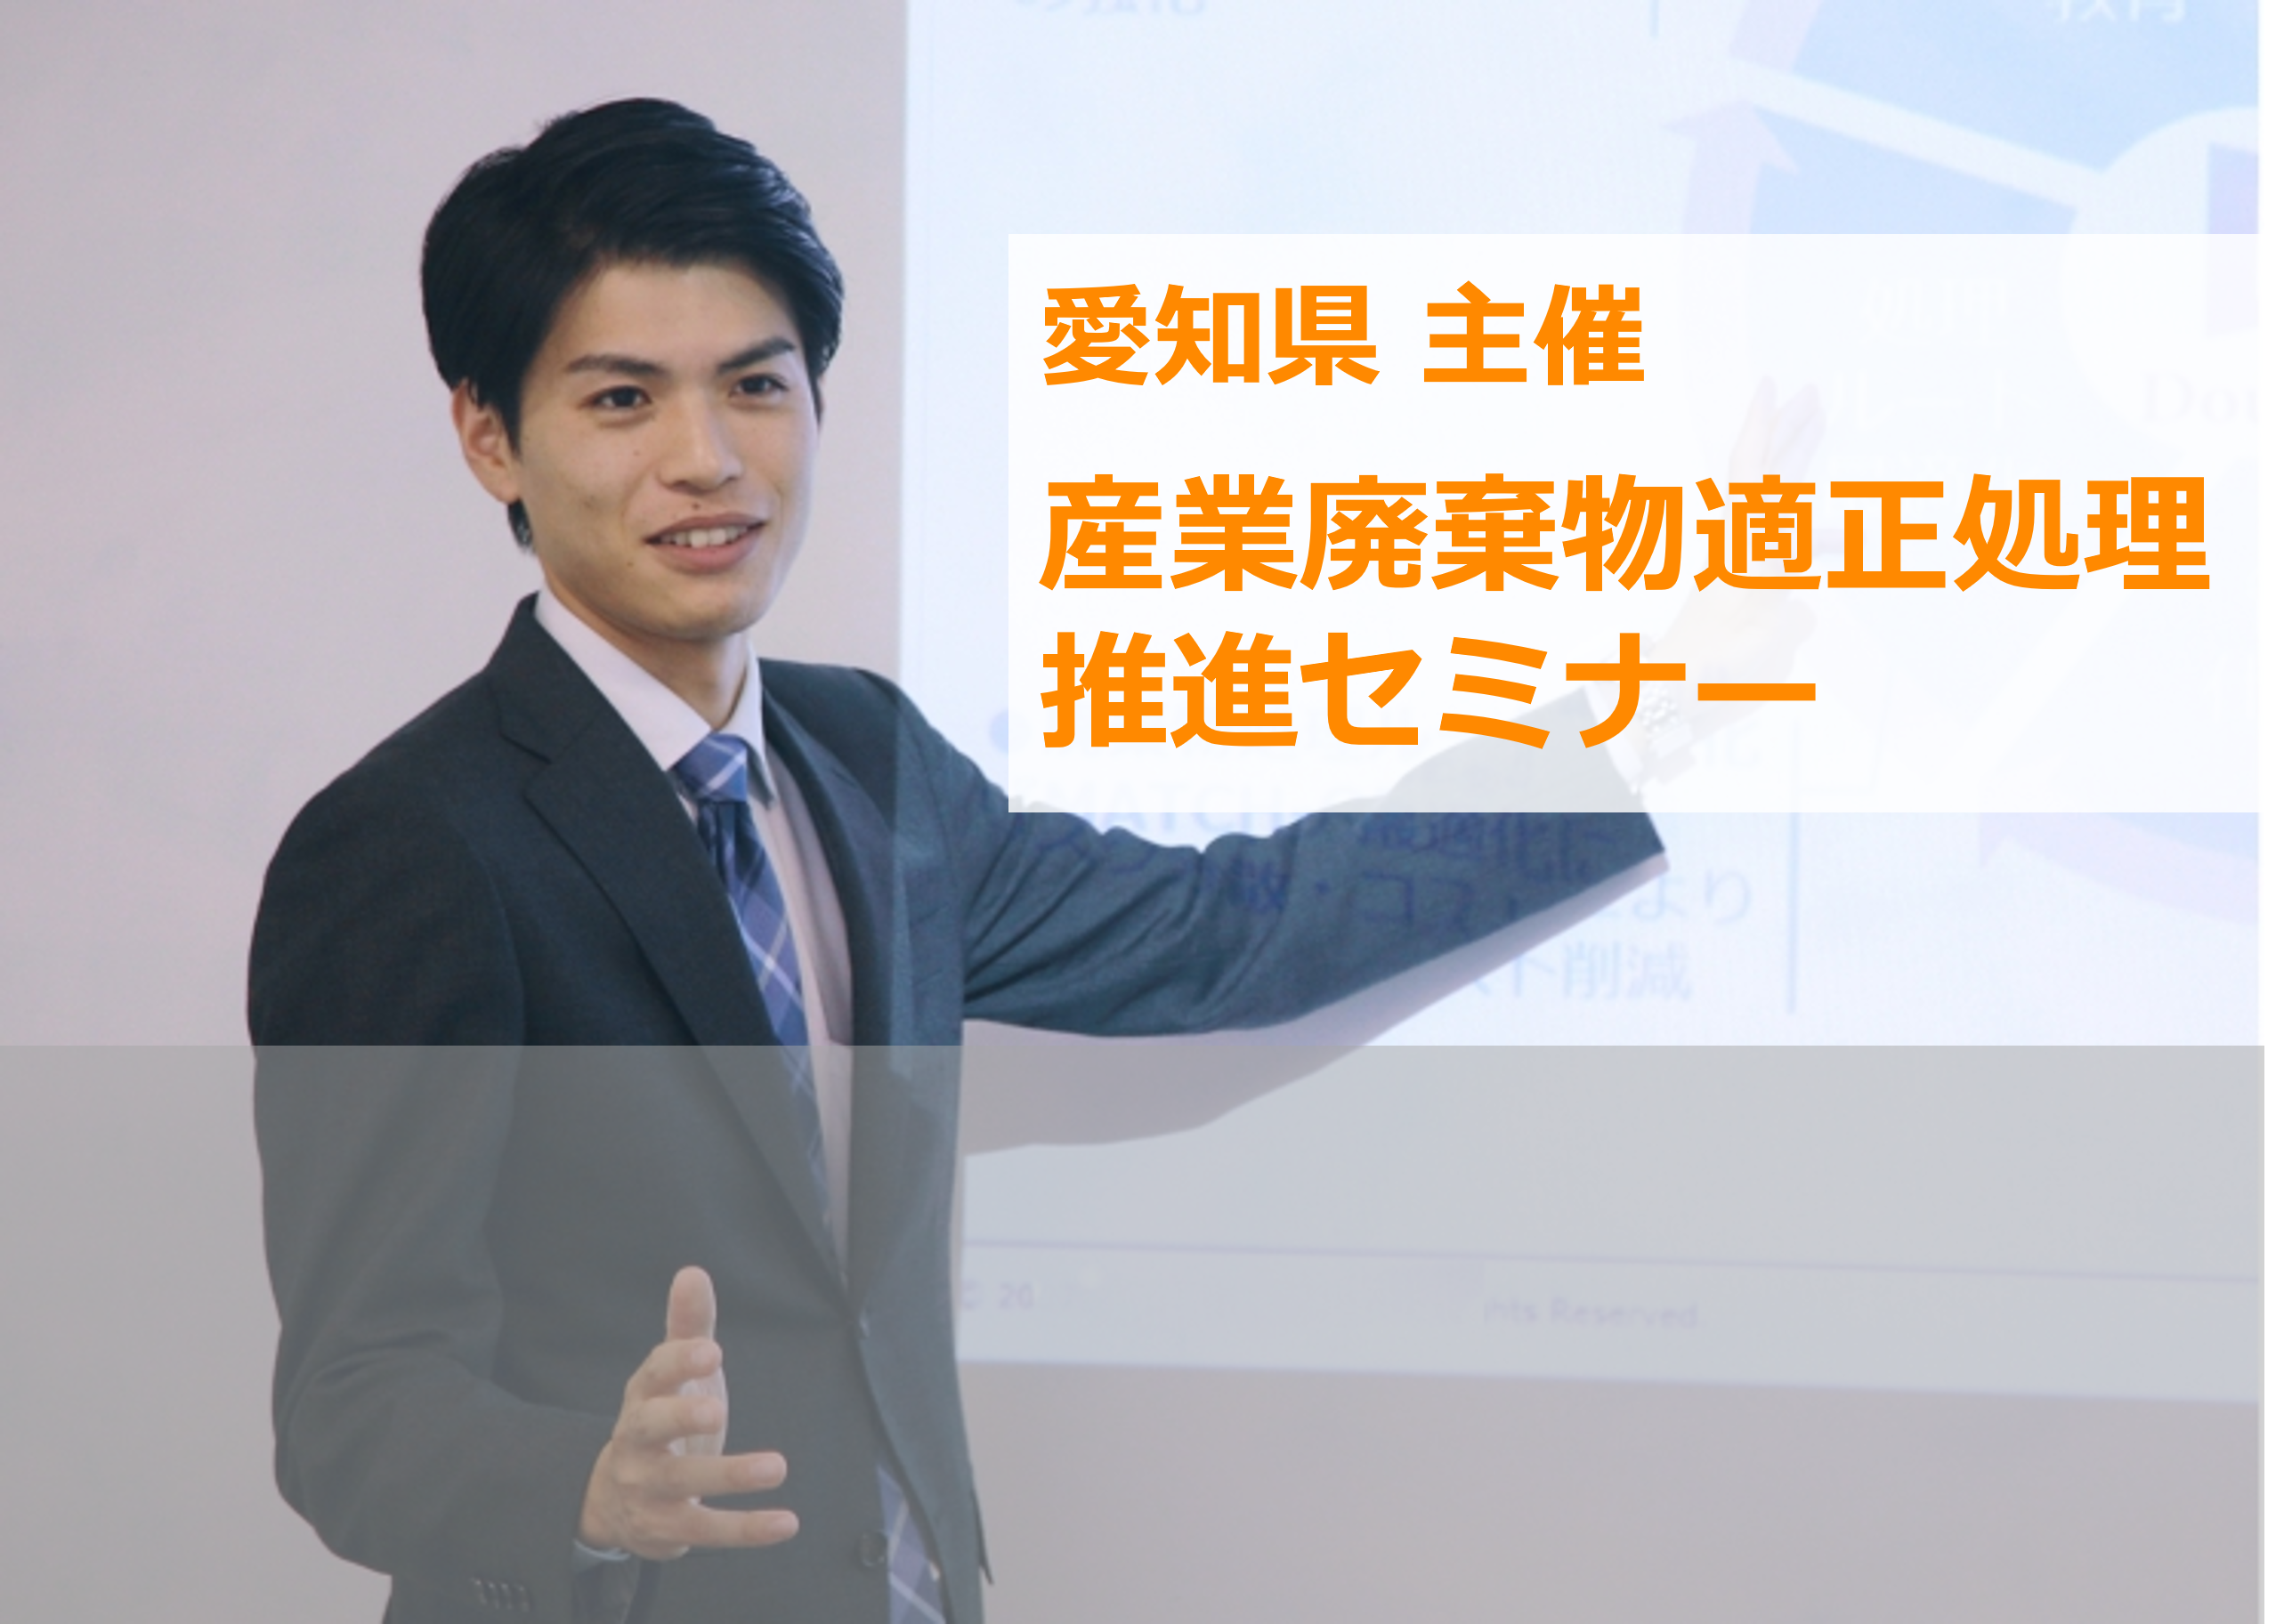 愛知県主催「産業廃棄物適正処理推進セミナー」（オンデマンド配信）にイーバリューが登壇します